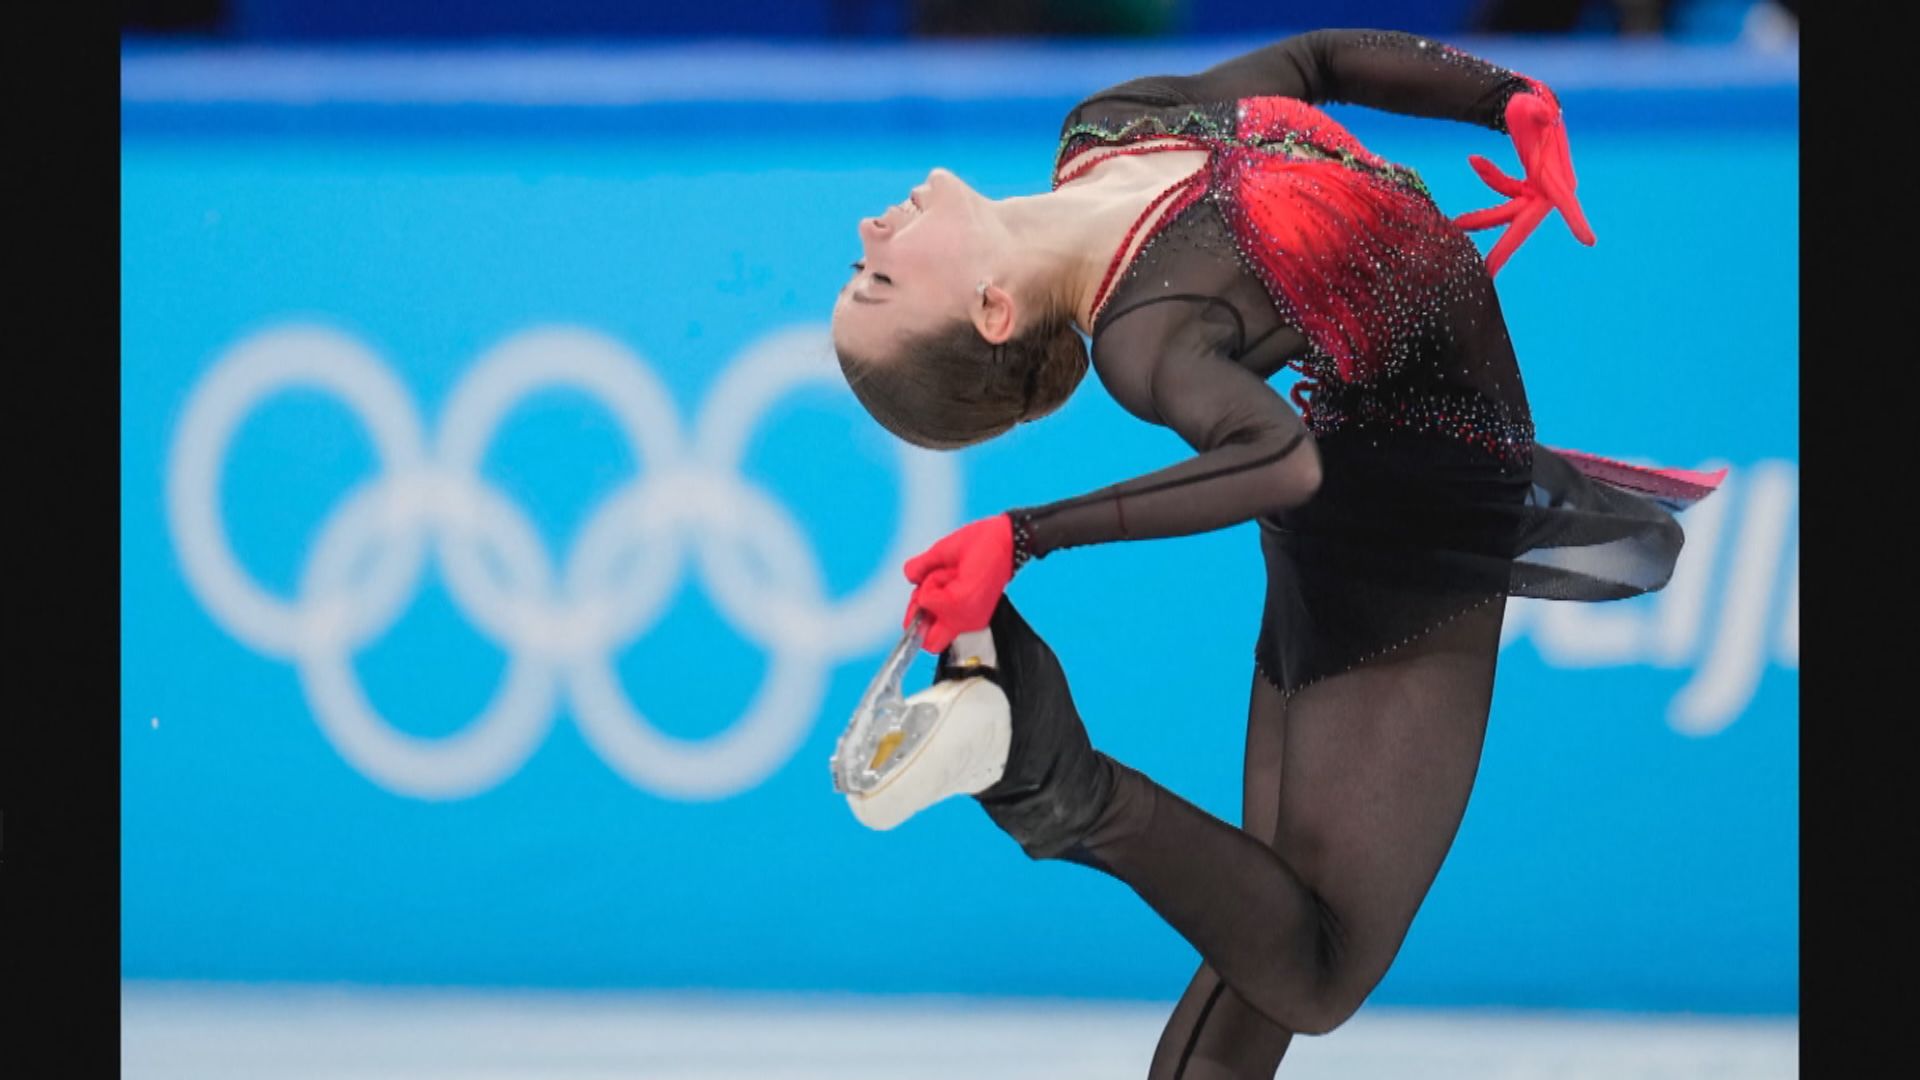 國際體育仲裁法庭將決定瓦利耶娃能否繼續在冬奧出賽